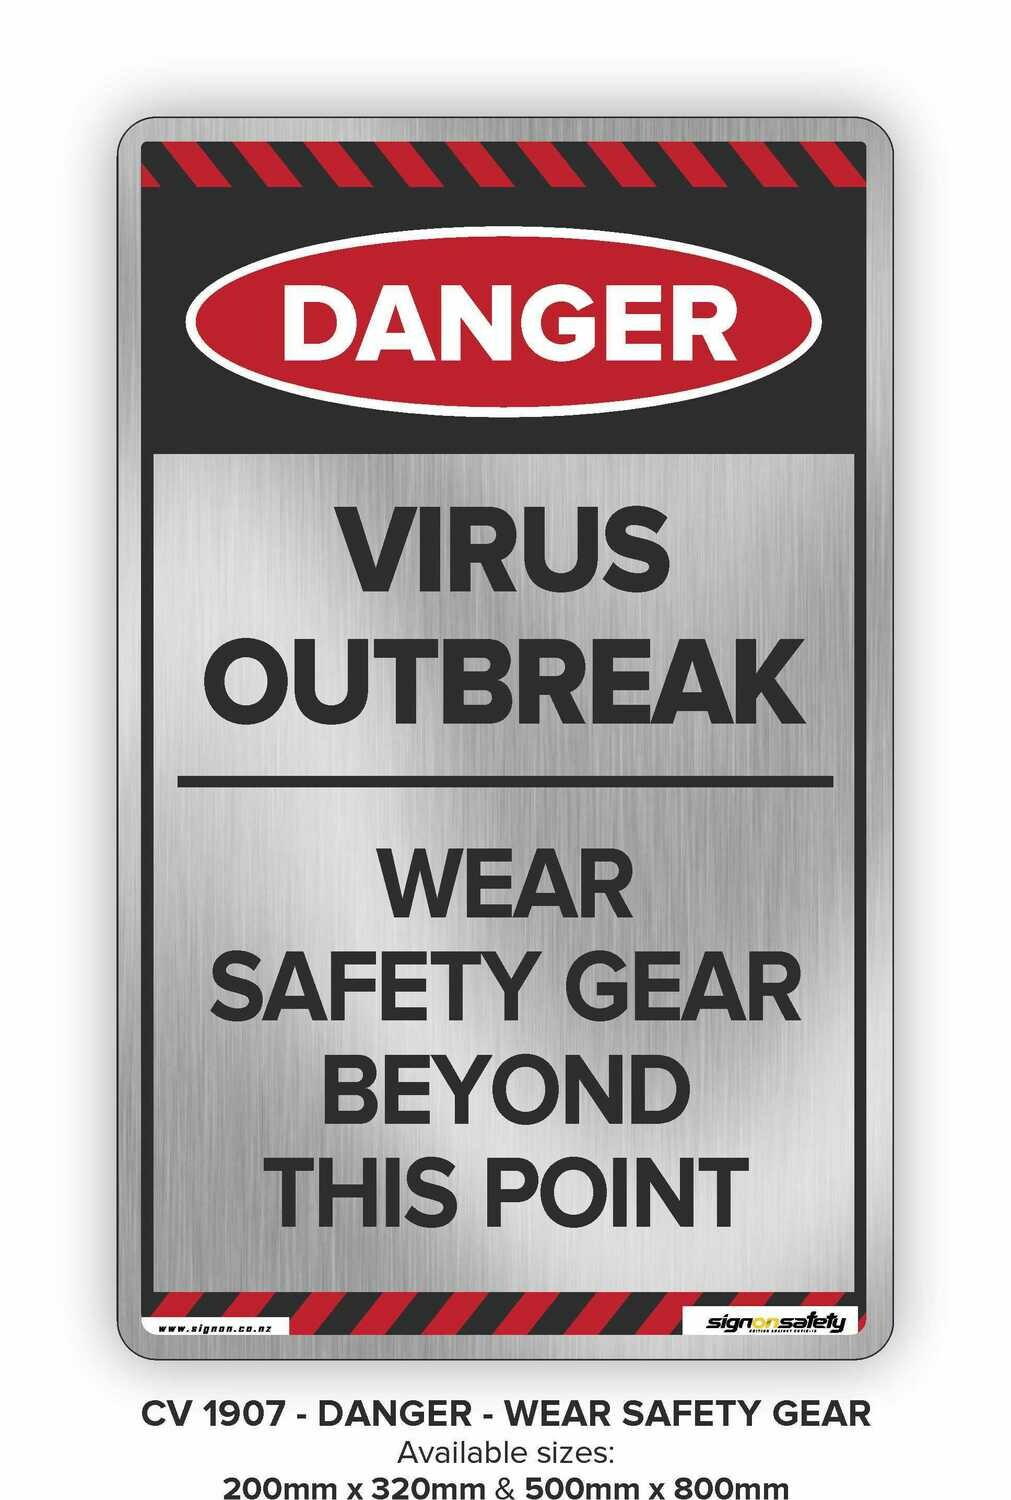 Danger - Virus Outbreak